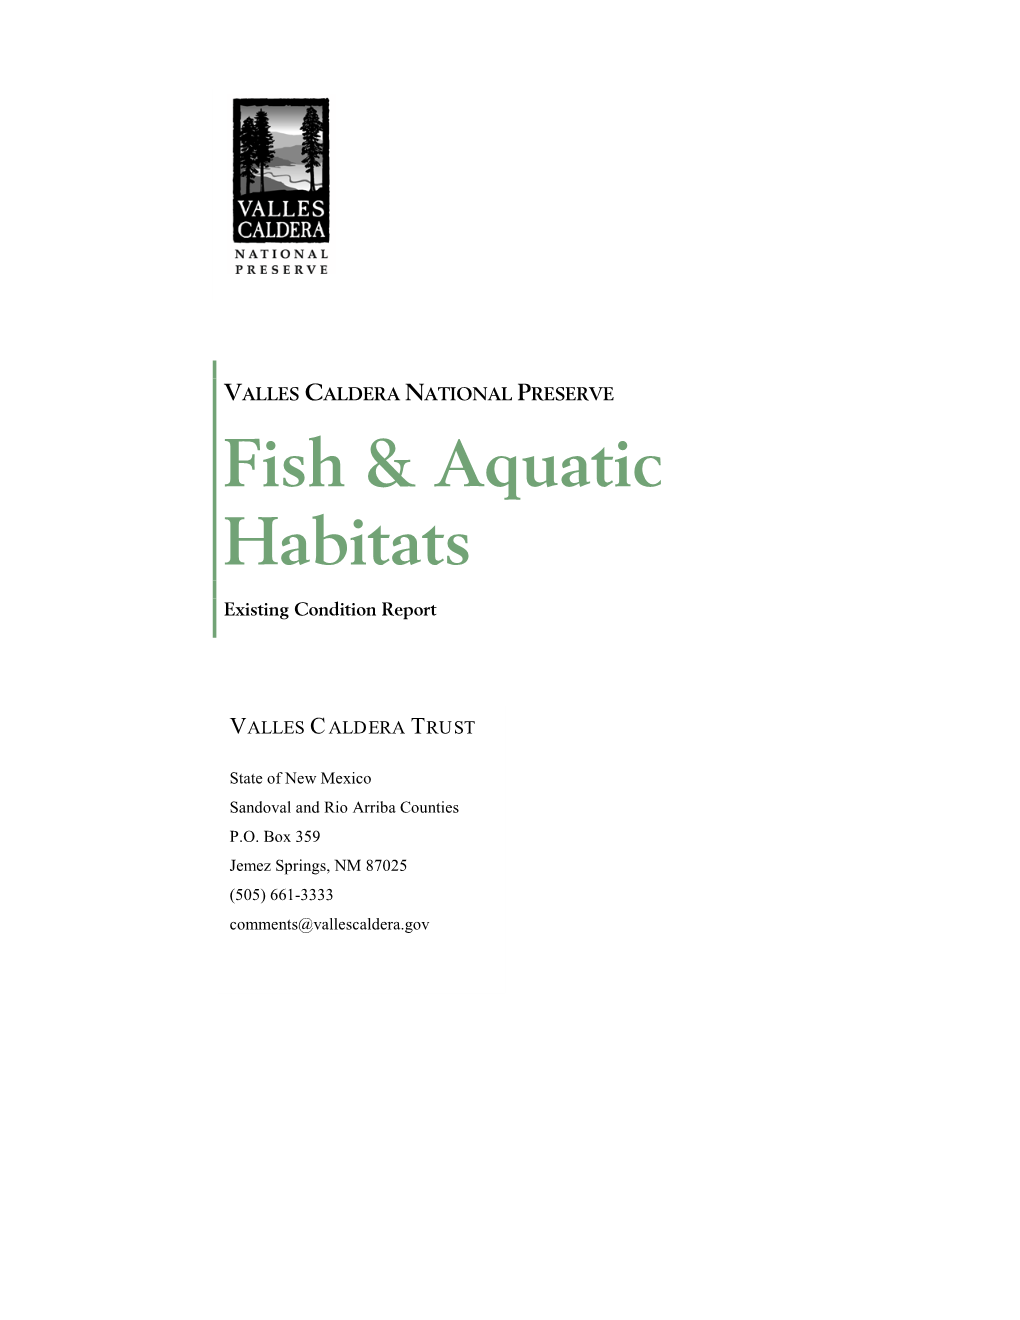 Fish & Aquatic Habitats